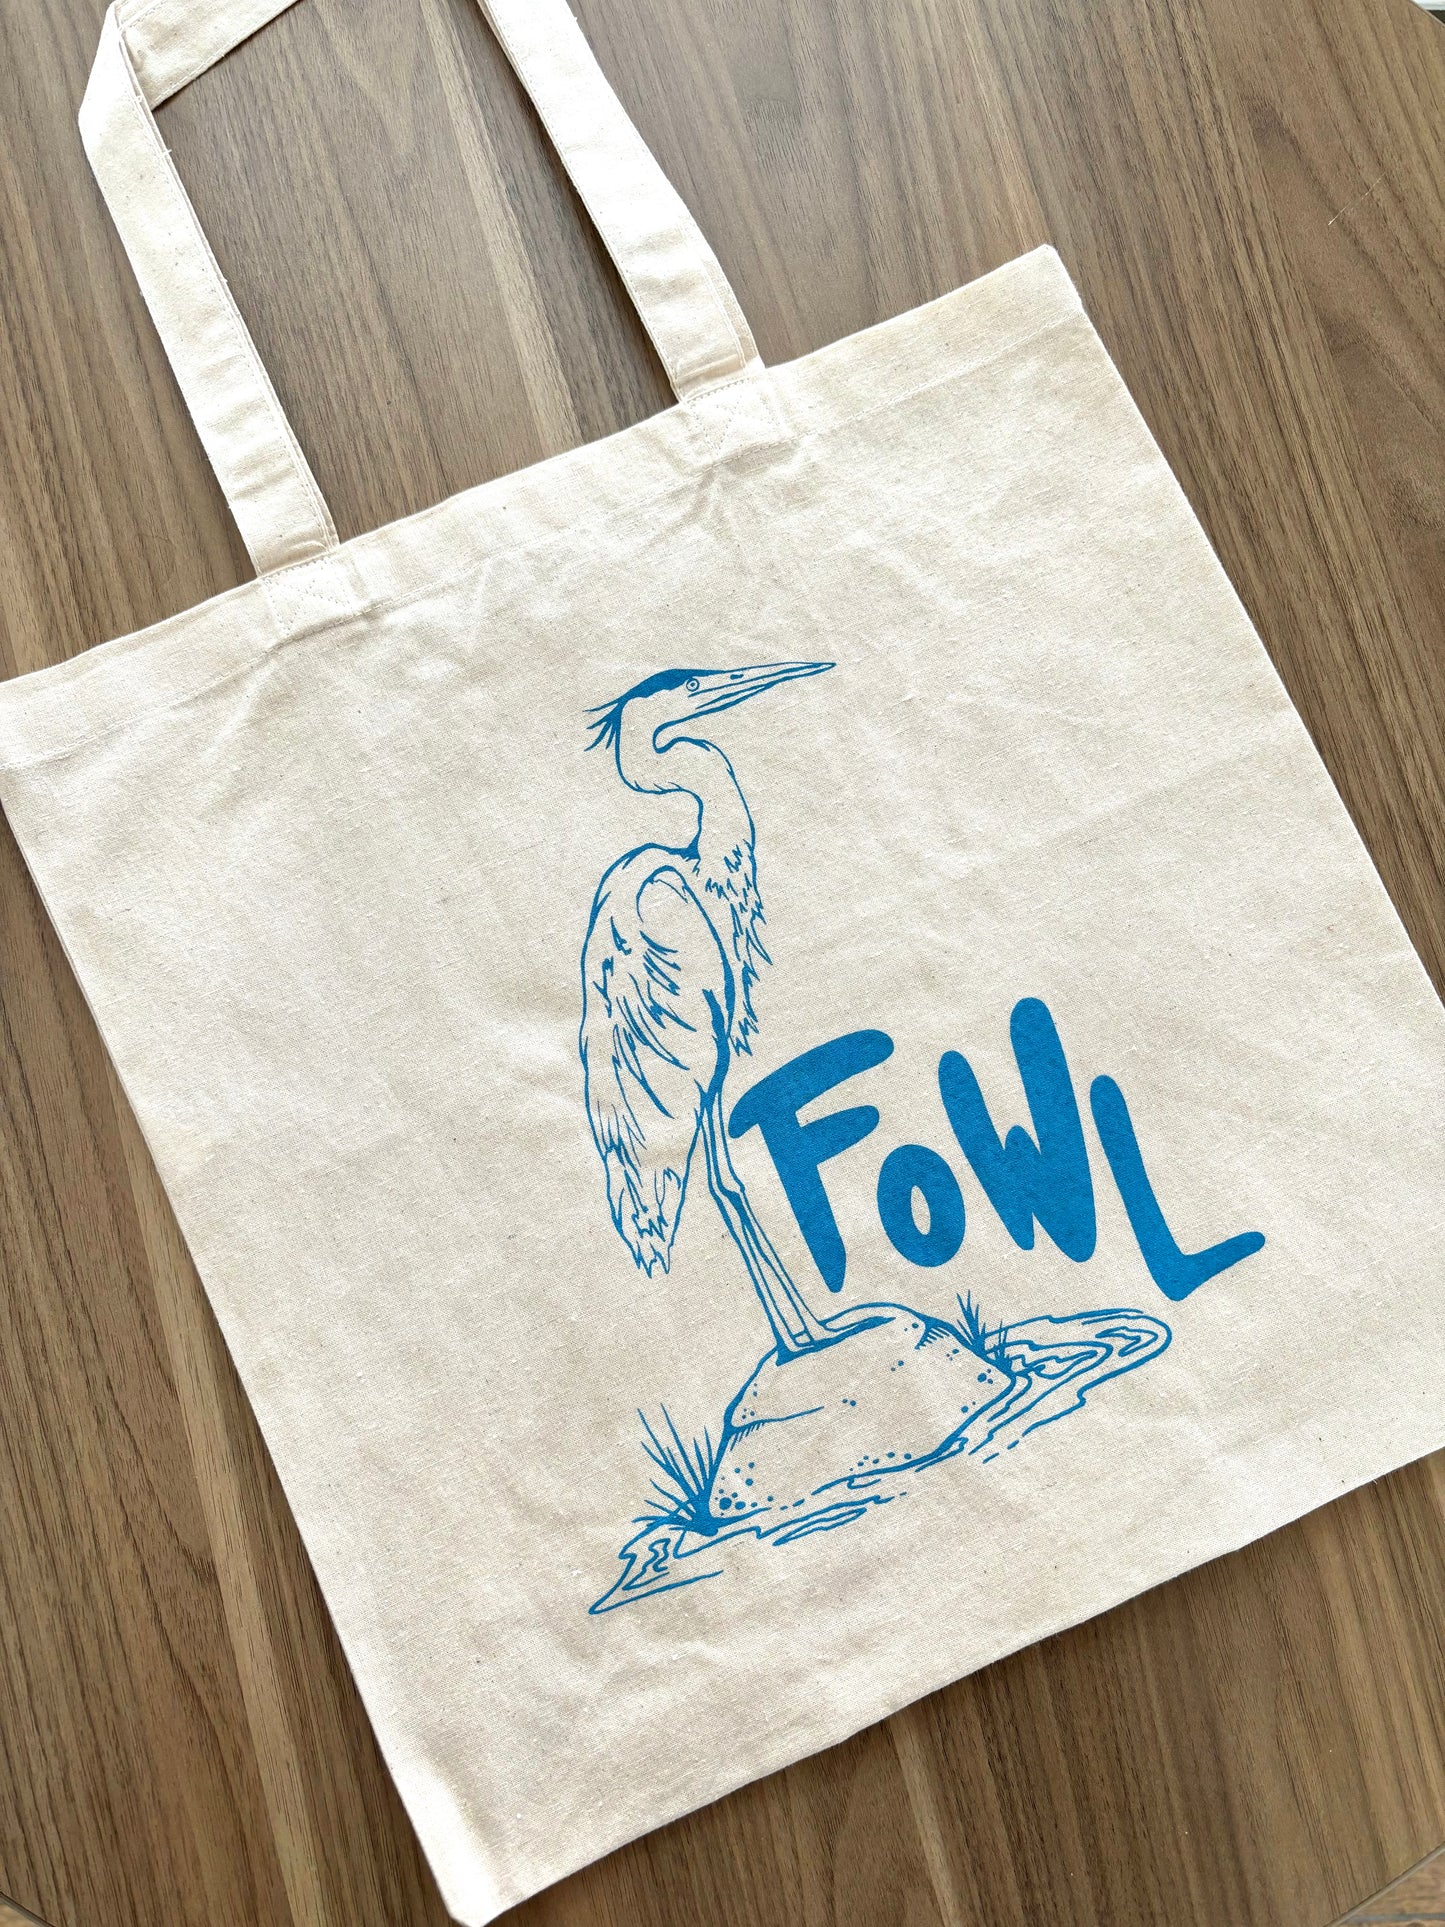 Fowl (Blue Heron) Tote Bag